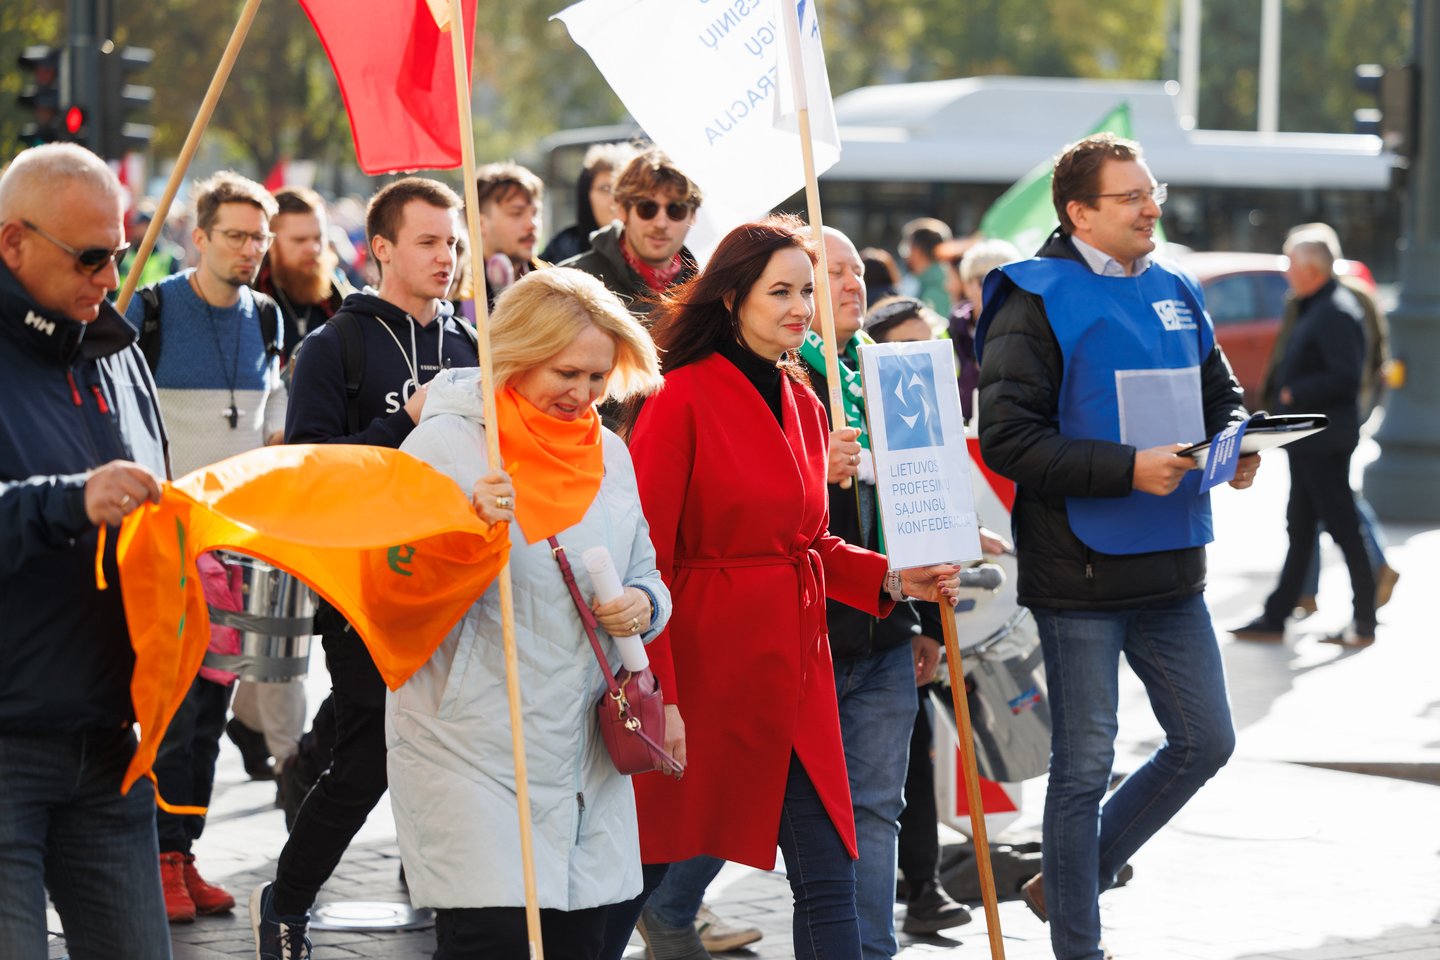 Penktadienį, išreiškiant solidarumą su protestuojančiomis Europos profsąjungomis ir prieštaraujant griežto taupymo politikai, vyksta trijų profsąjungų organizuojama eisena nuo Katedros aikštės iki Seimo, kur planuojamas mitingas.<br>T.Bauro nuotr.